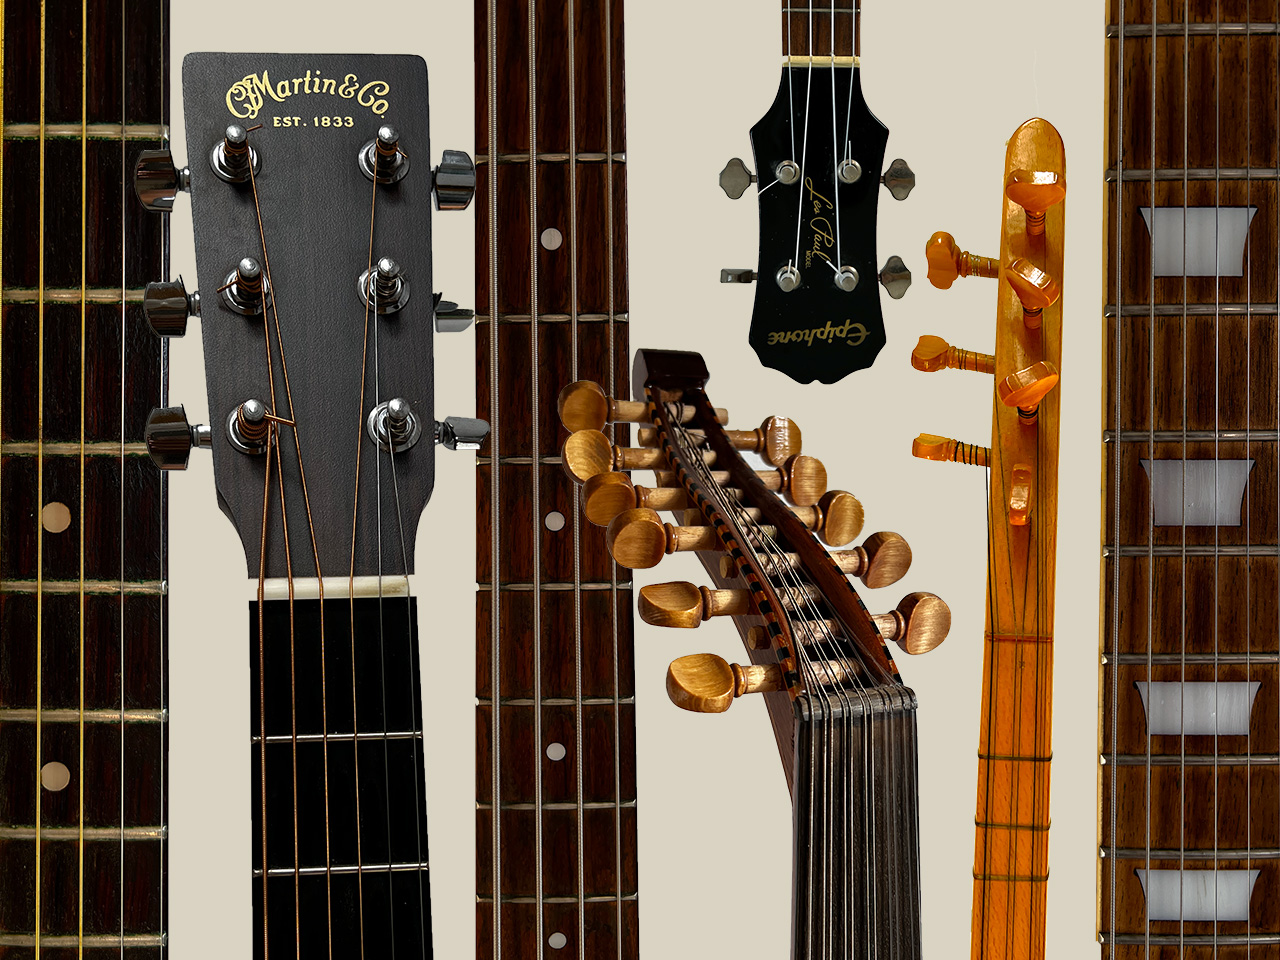 De snaarinstrumenten van Ralph (enkele gitaren, een basgitaar, een ud, een saz en een ukelele).